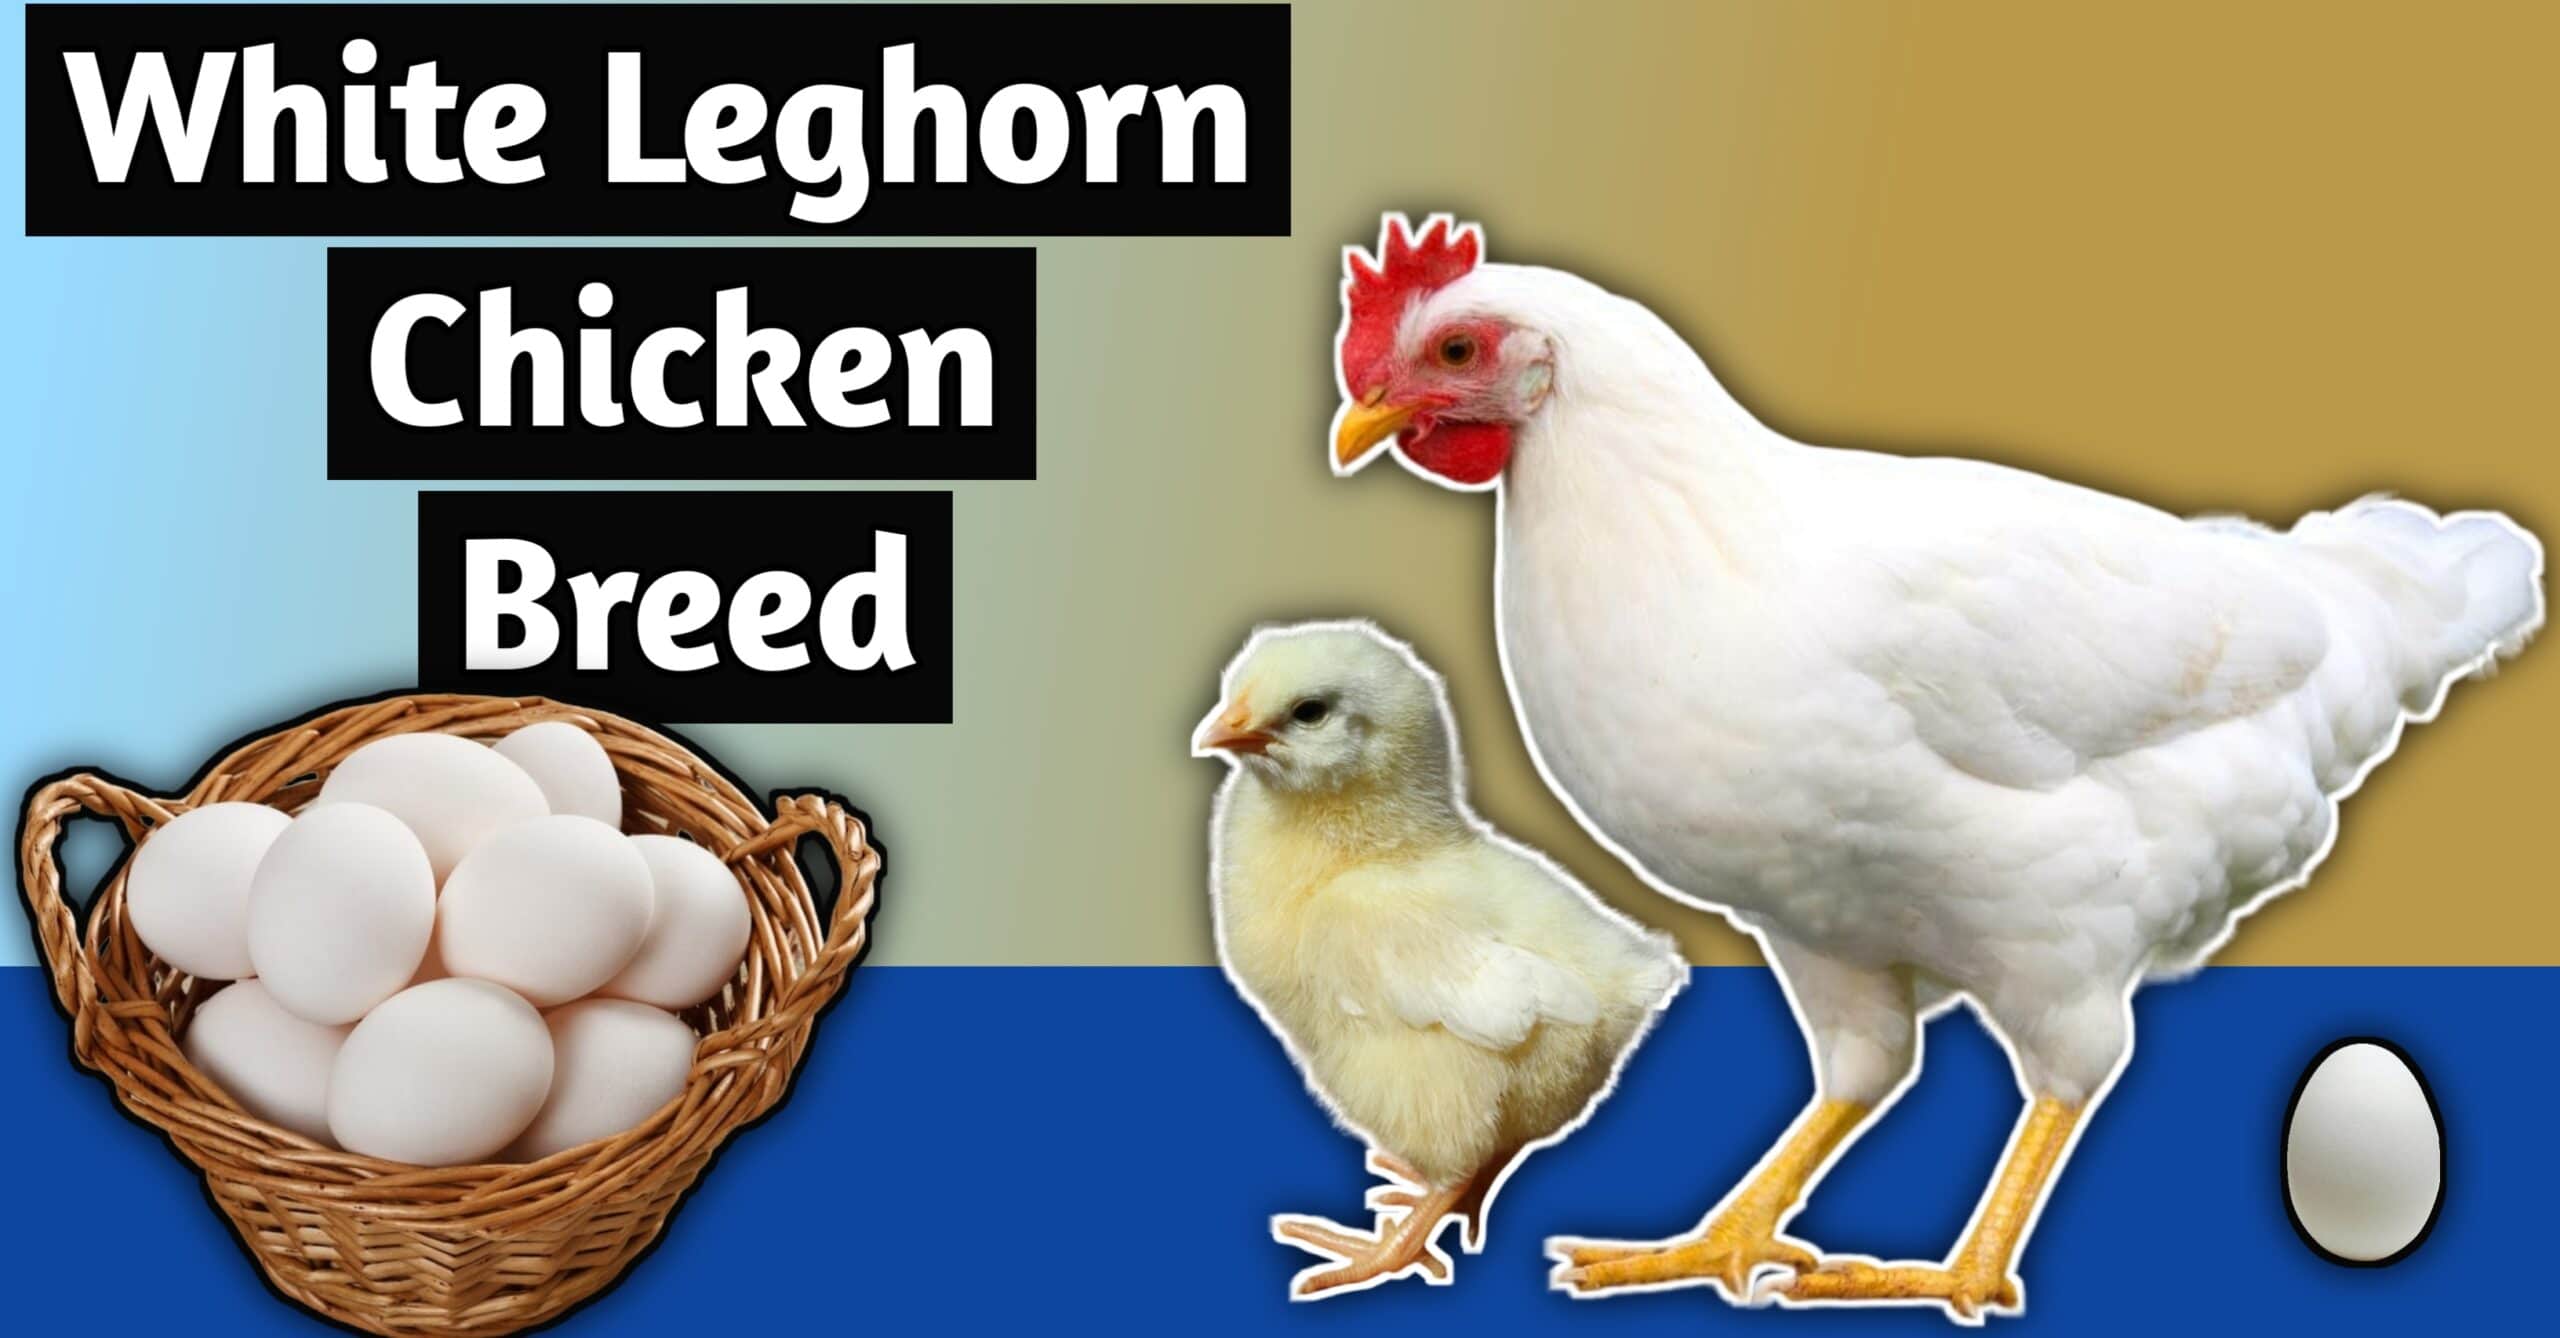 White leghorn chicken breed